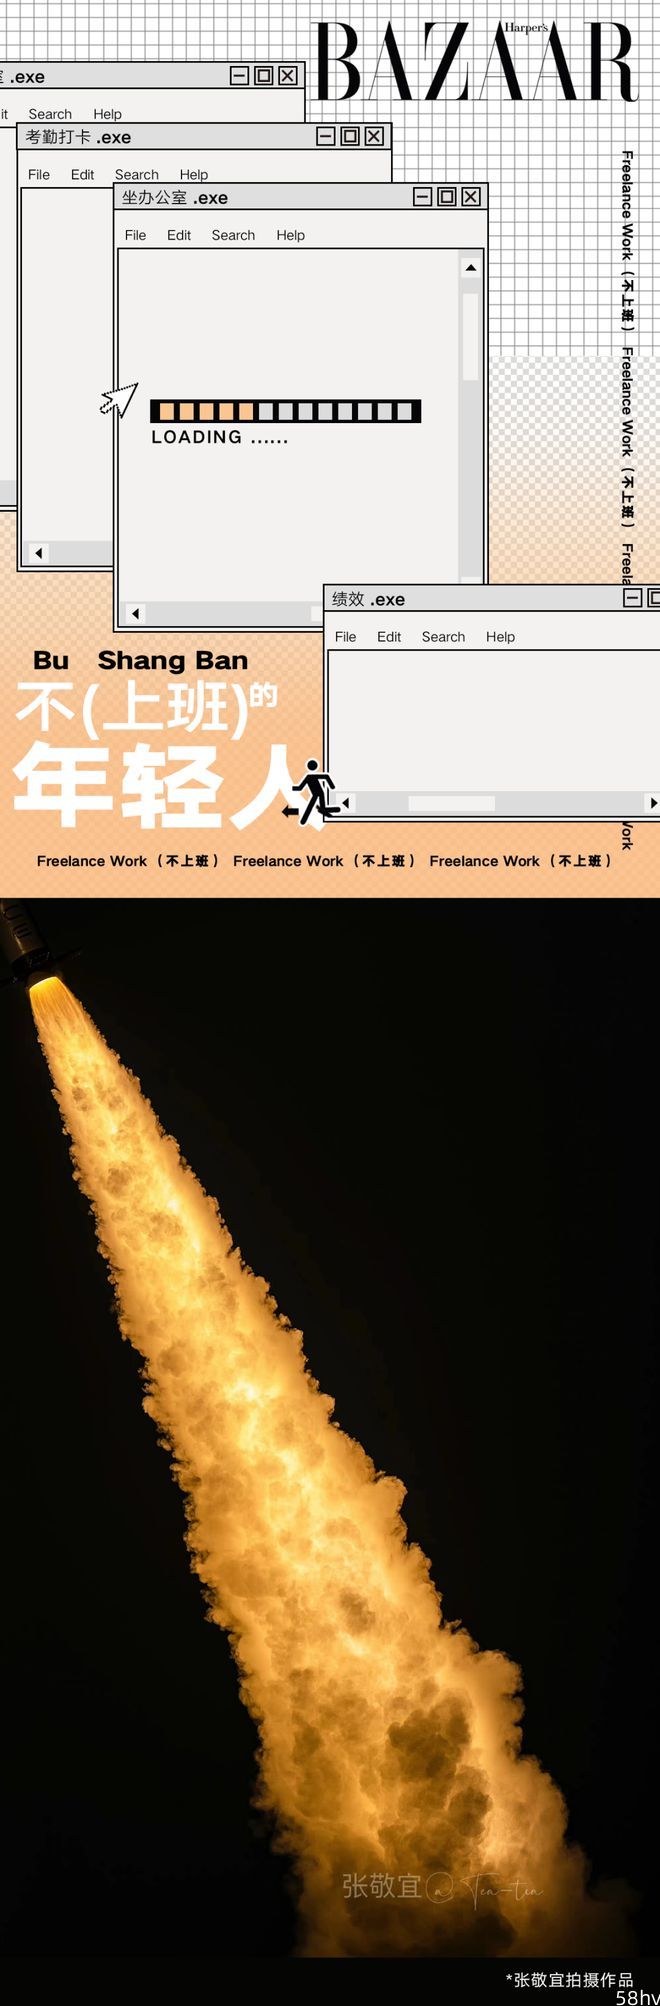 为什么说中国火箭是“全世界最美”？她拍明白了